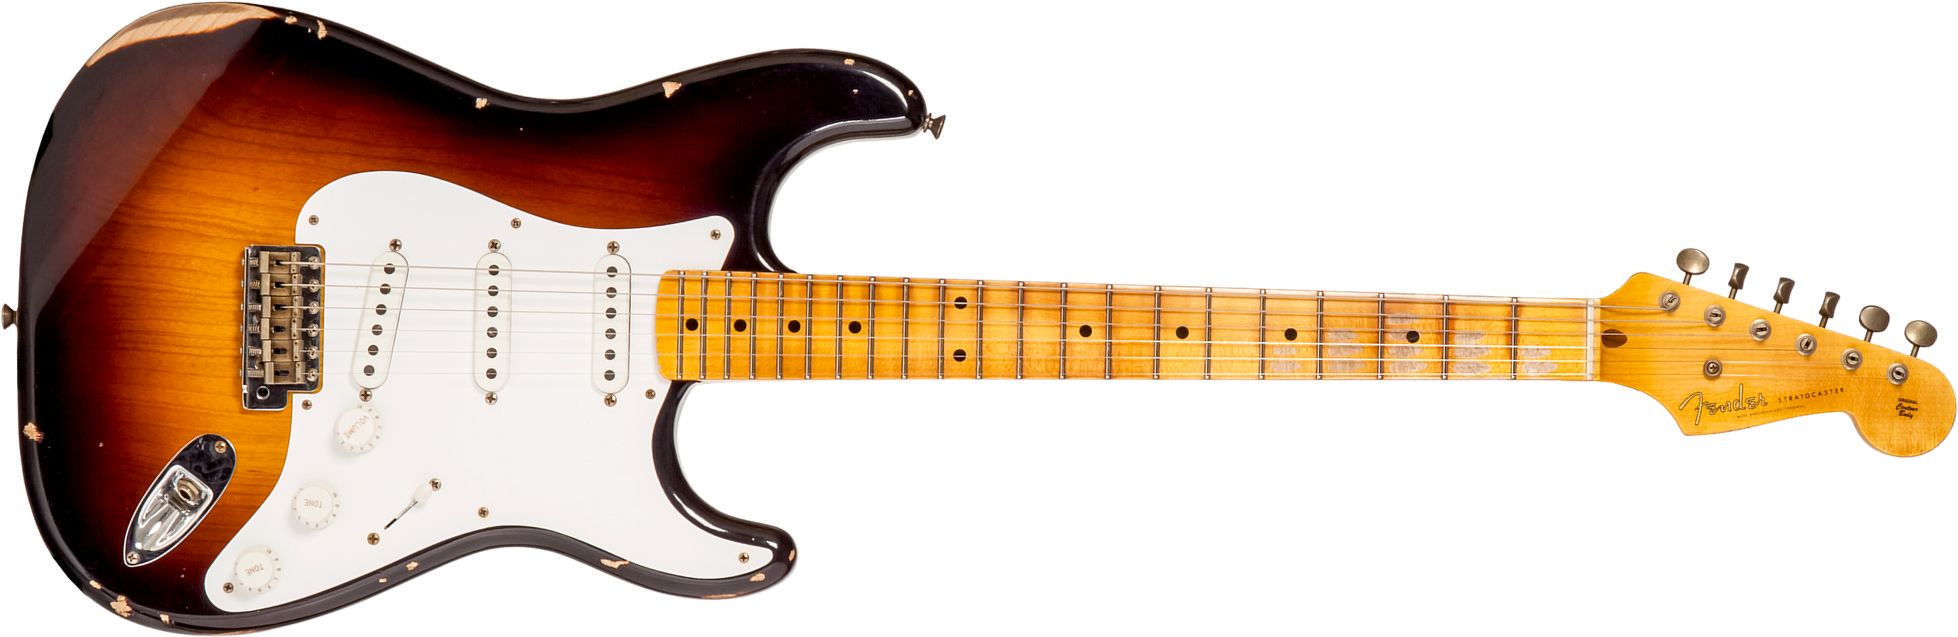 Fender Custom Shop Strat 1954 70th Anniv. 3s Trem Mn #xn4158 - Relic Wide-fade 2-color Sunburst - Guitare Électrique Forme Str - Main picture